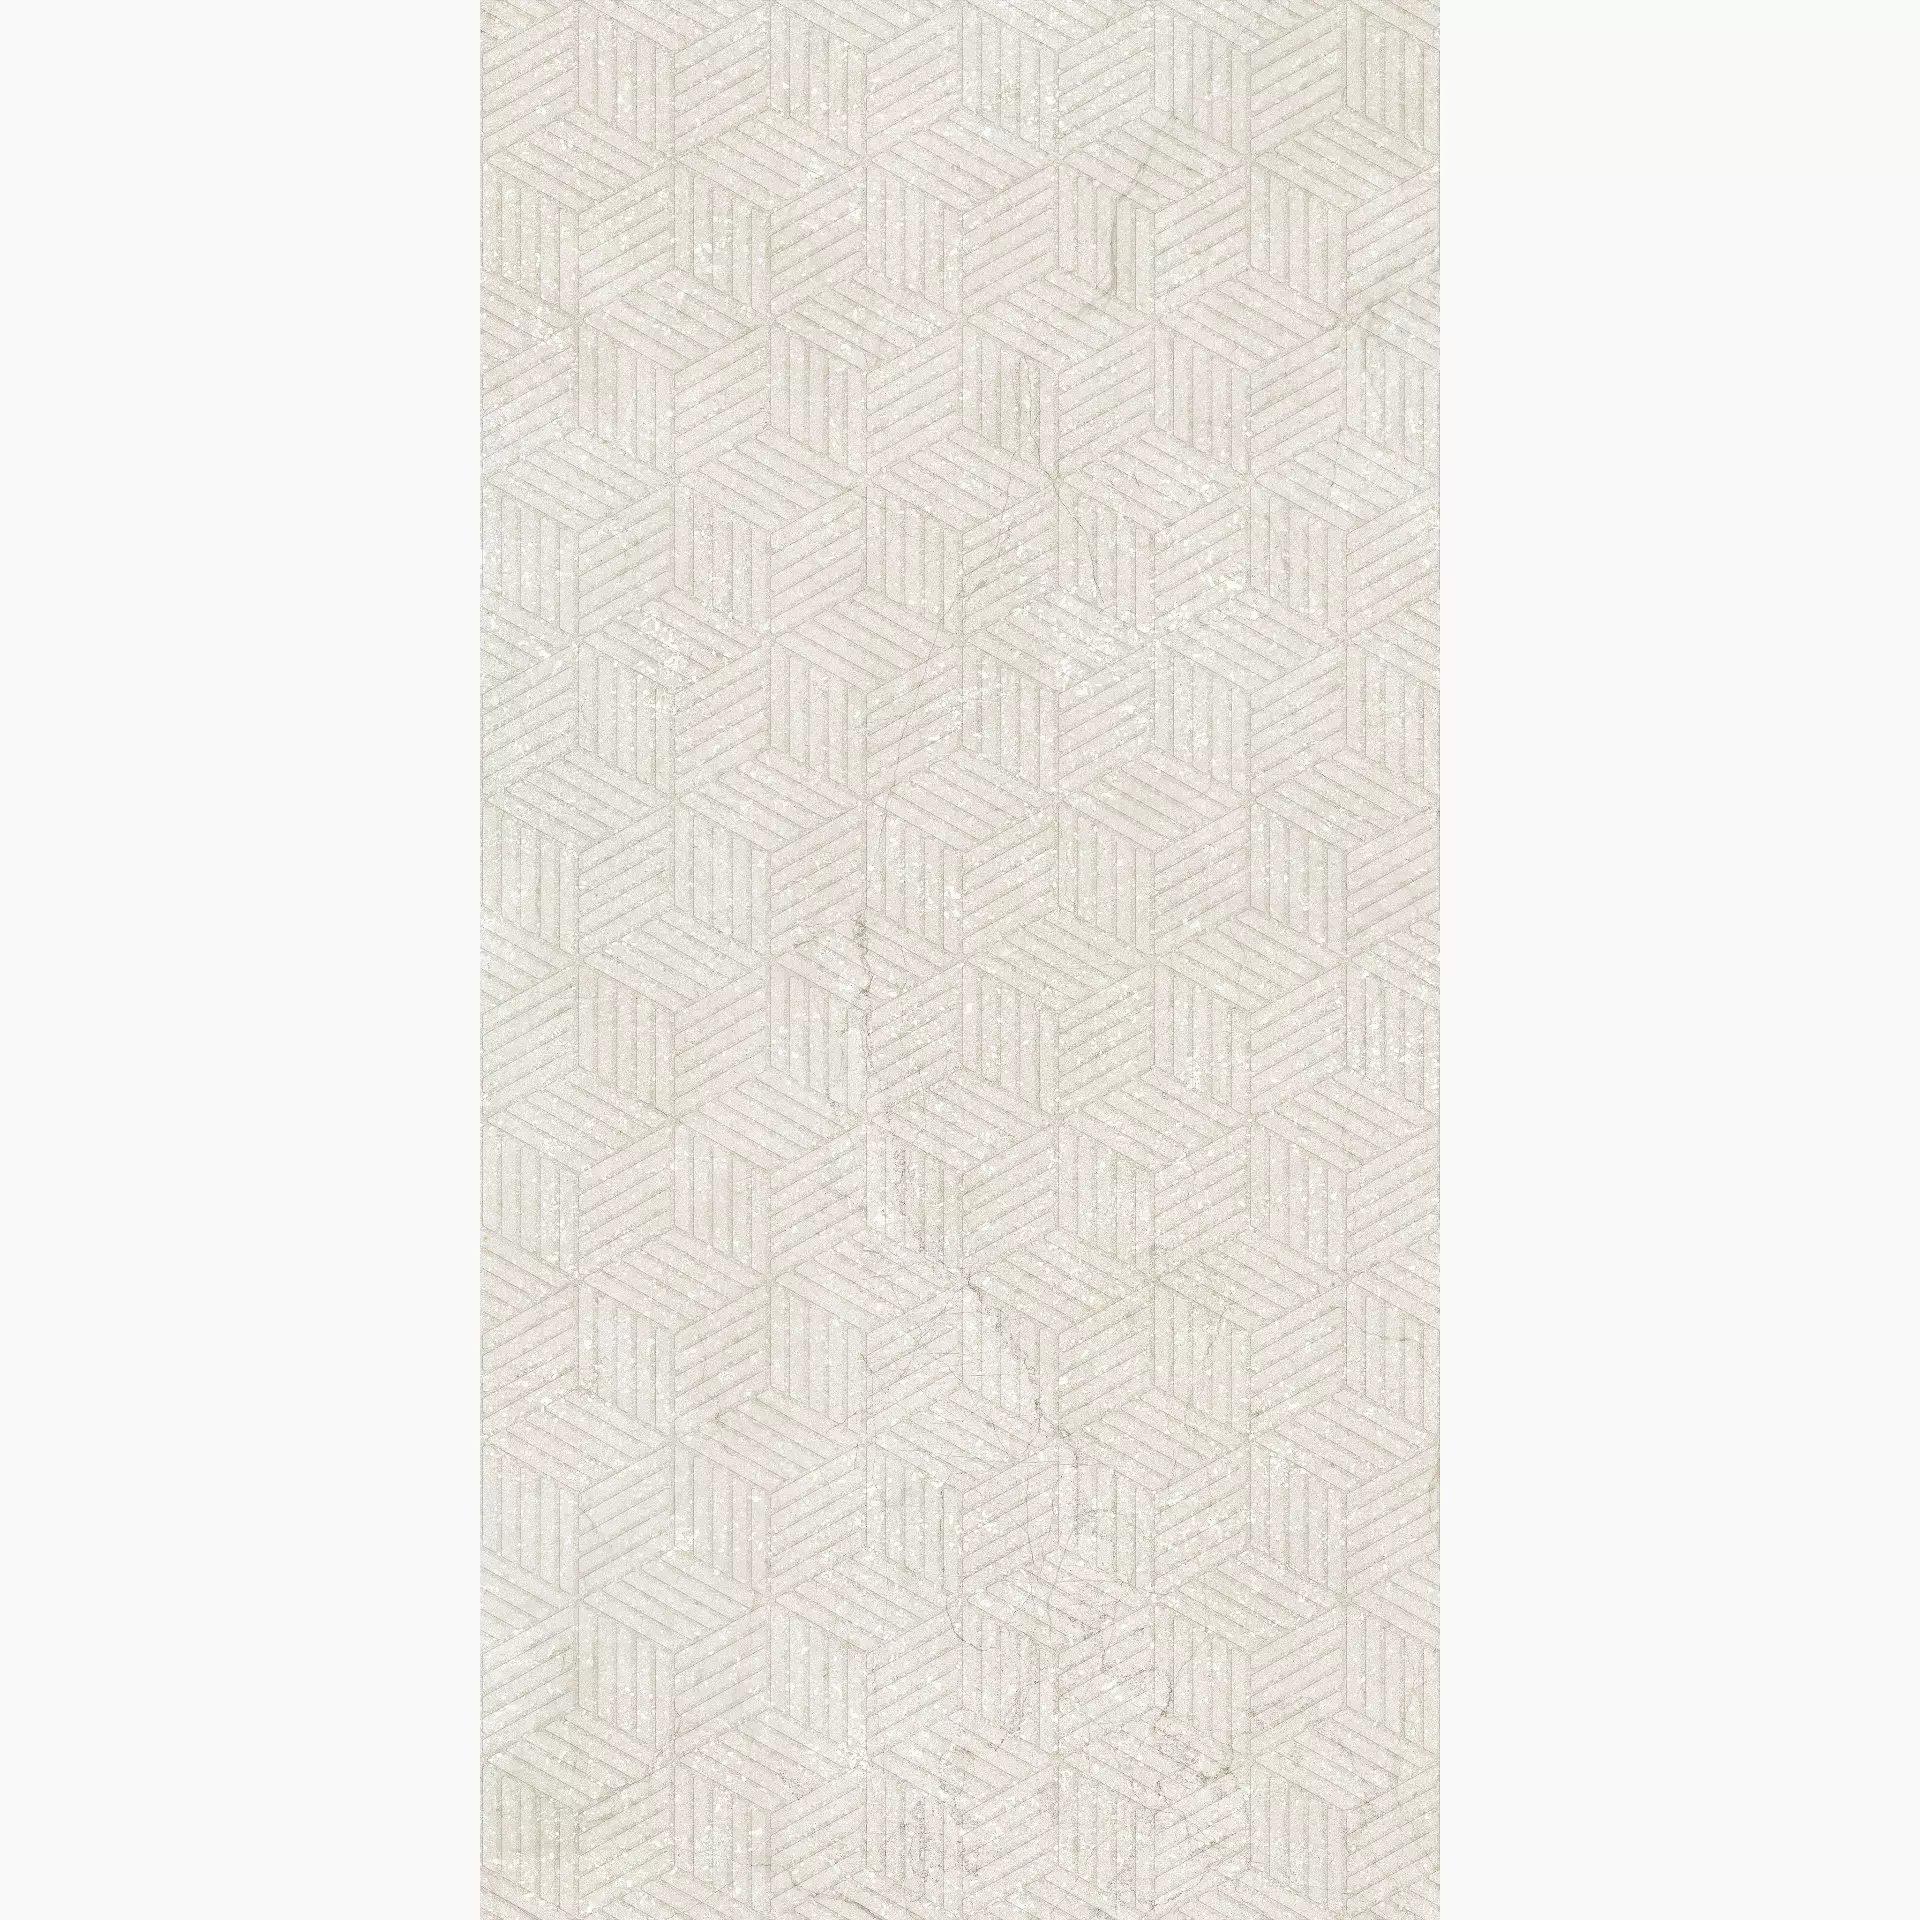 Florim Stone Life Cotton Naturale – Matt Decor Cubes 779339 60x120cm rectified 6mm